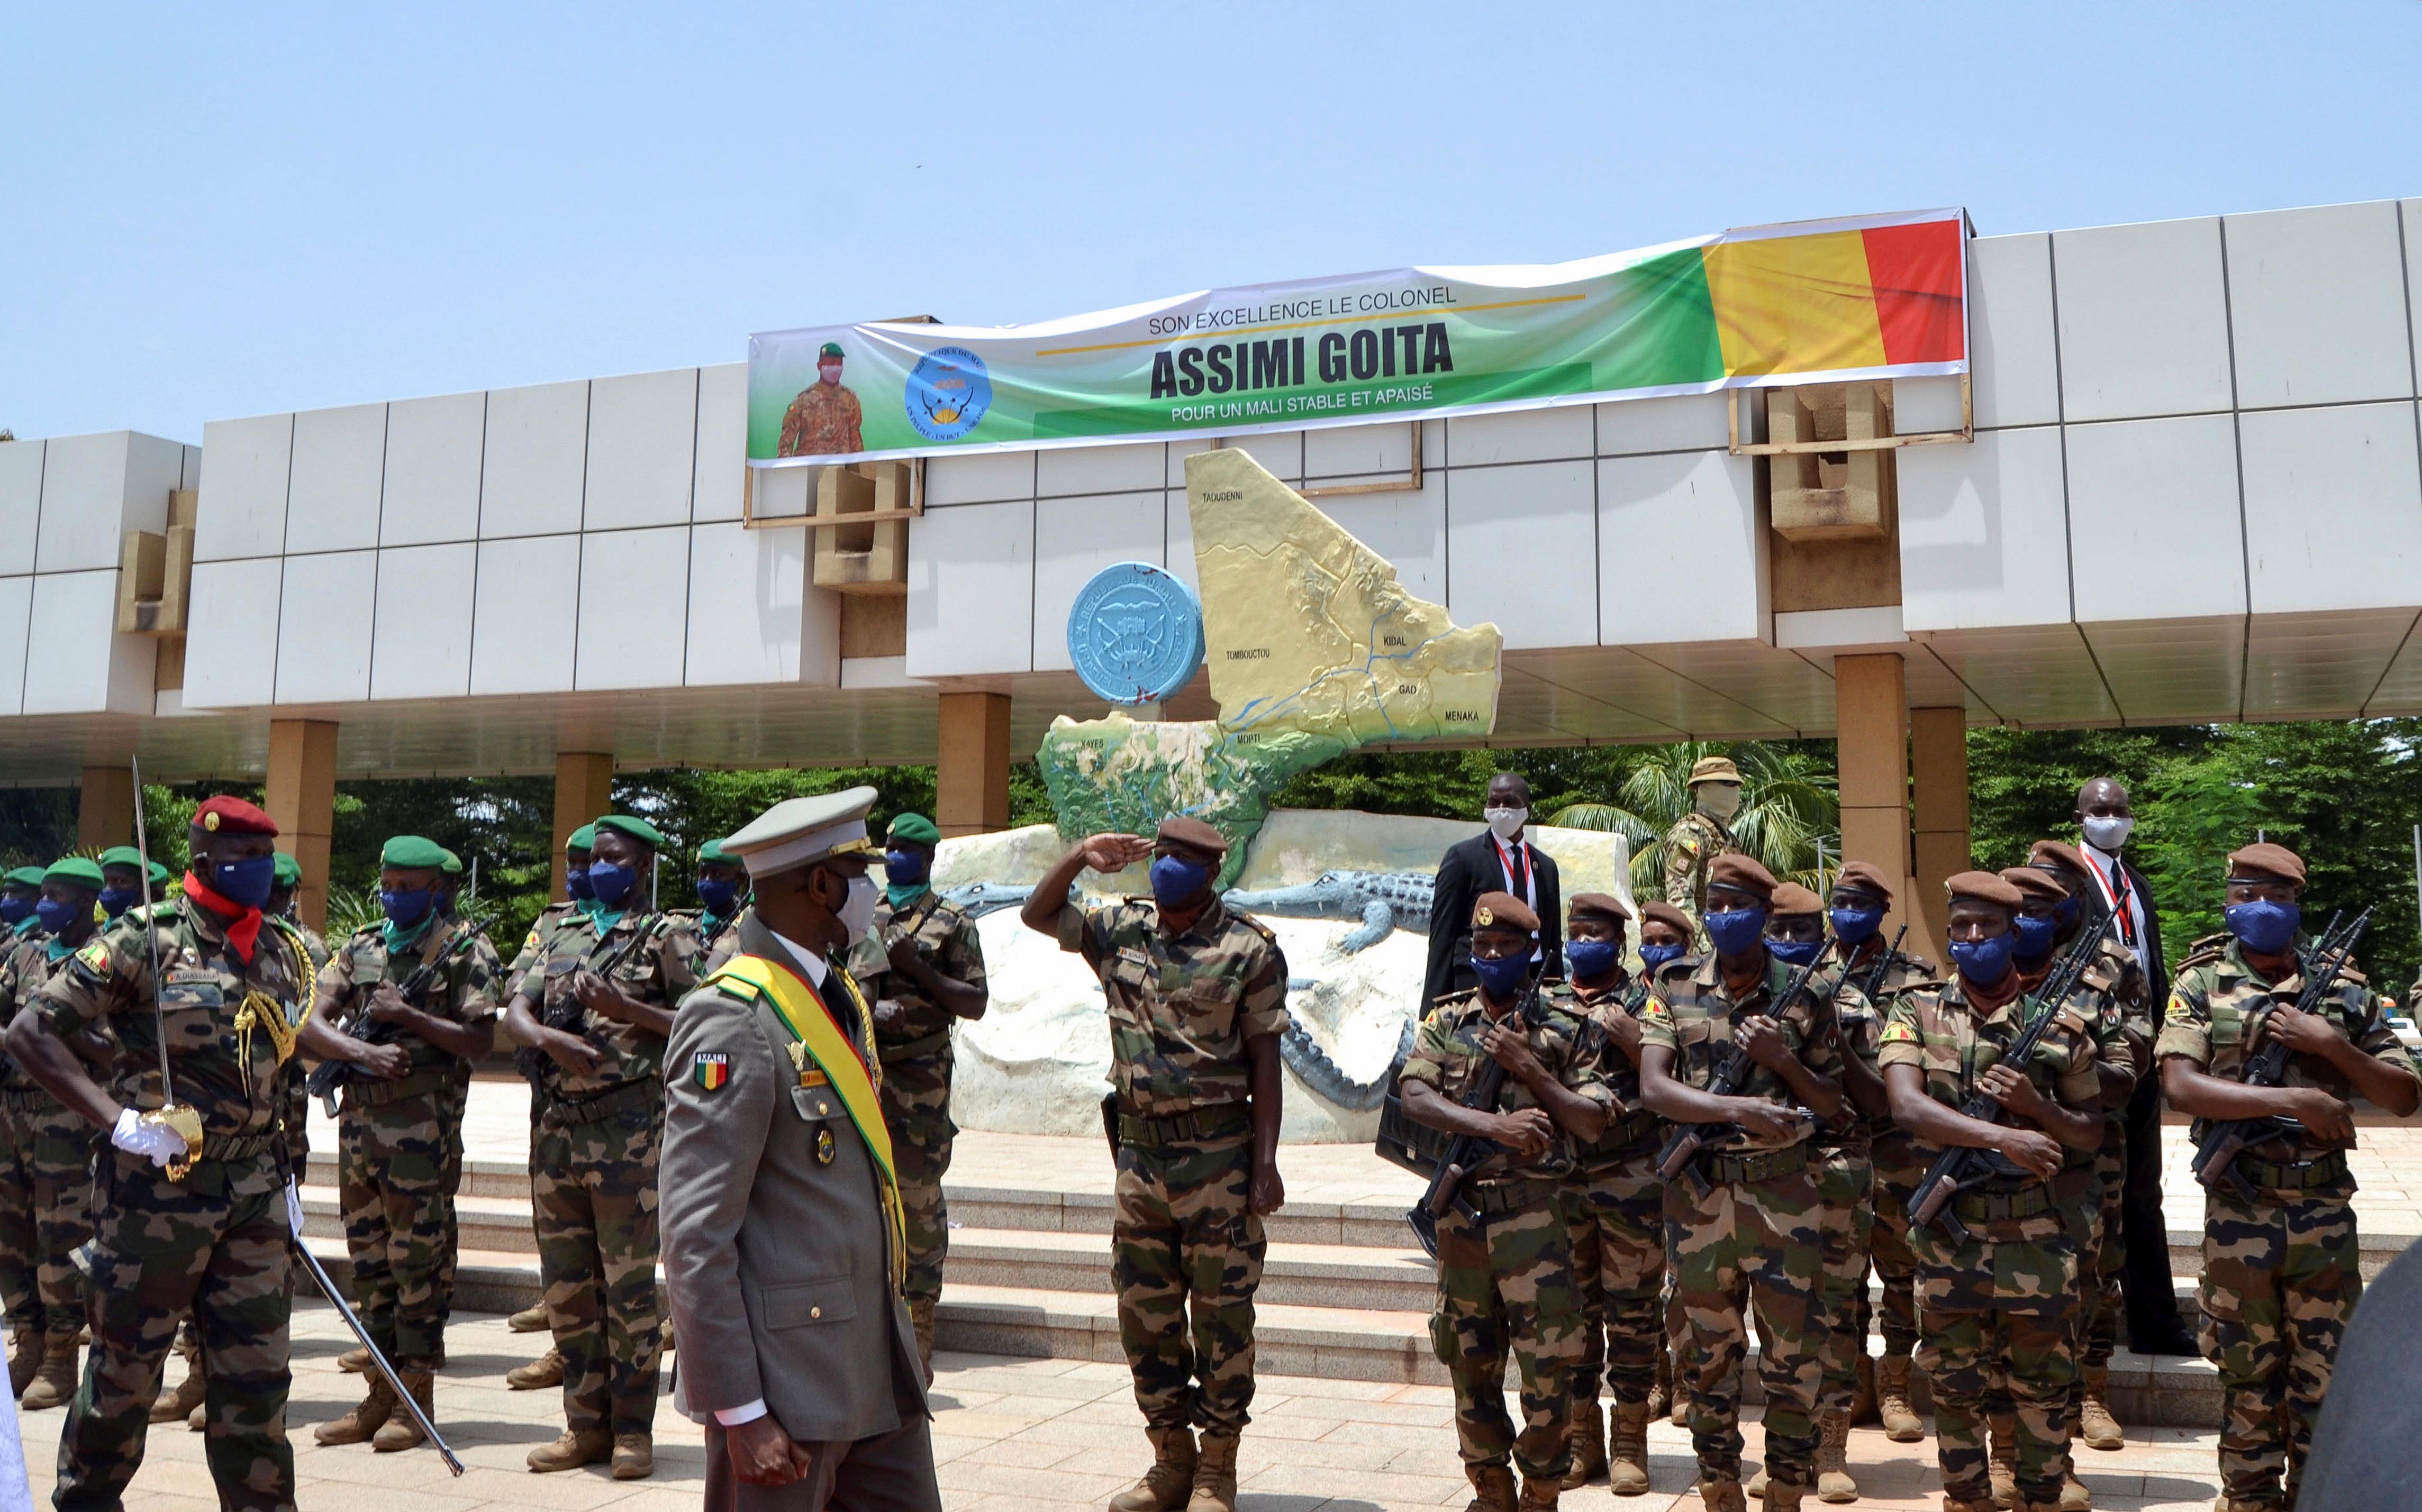 Le colonel Assimi Goïta marchait devant des troupes à Bamako après avoir prêté serment en tant que président de transition du Mali, le 7 juin 2021. Le 4 mai, Goïta avait renversé le précédent gouvernement putschiste, dirigé par l’ex-président Bah Ndaw.